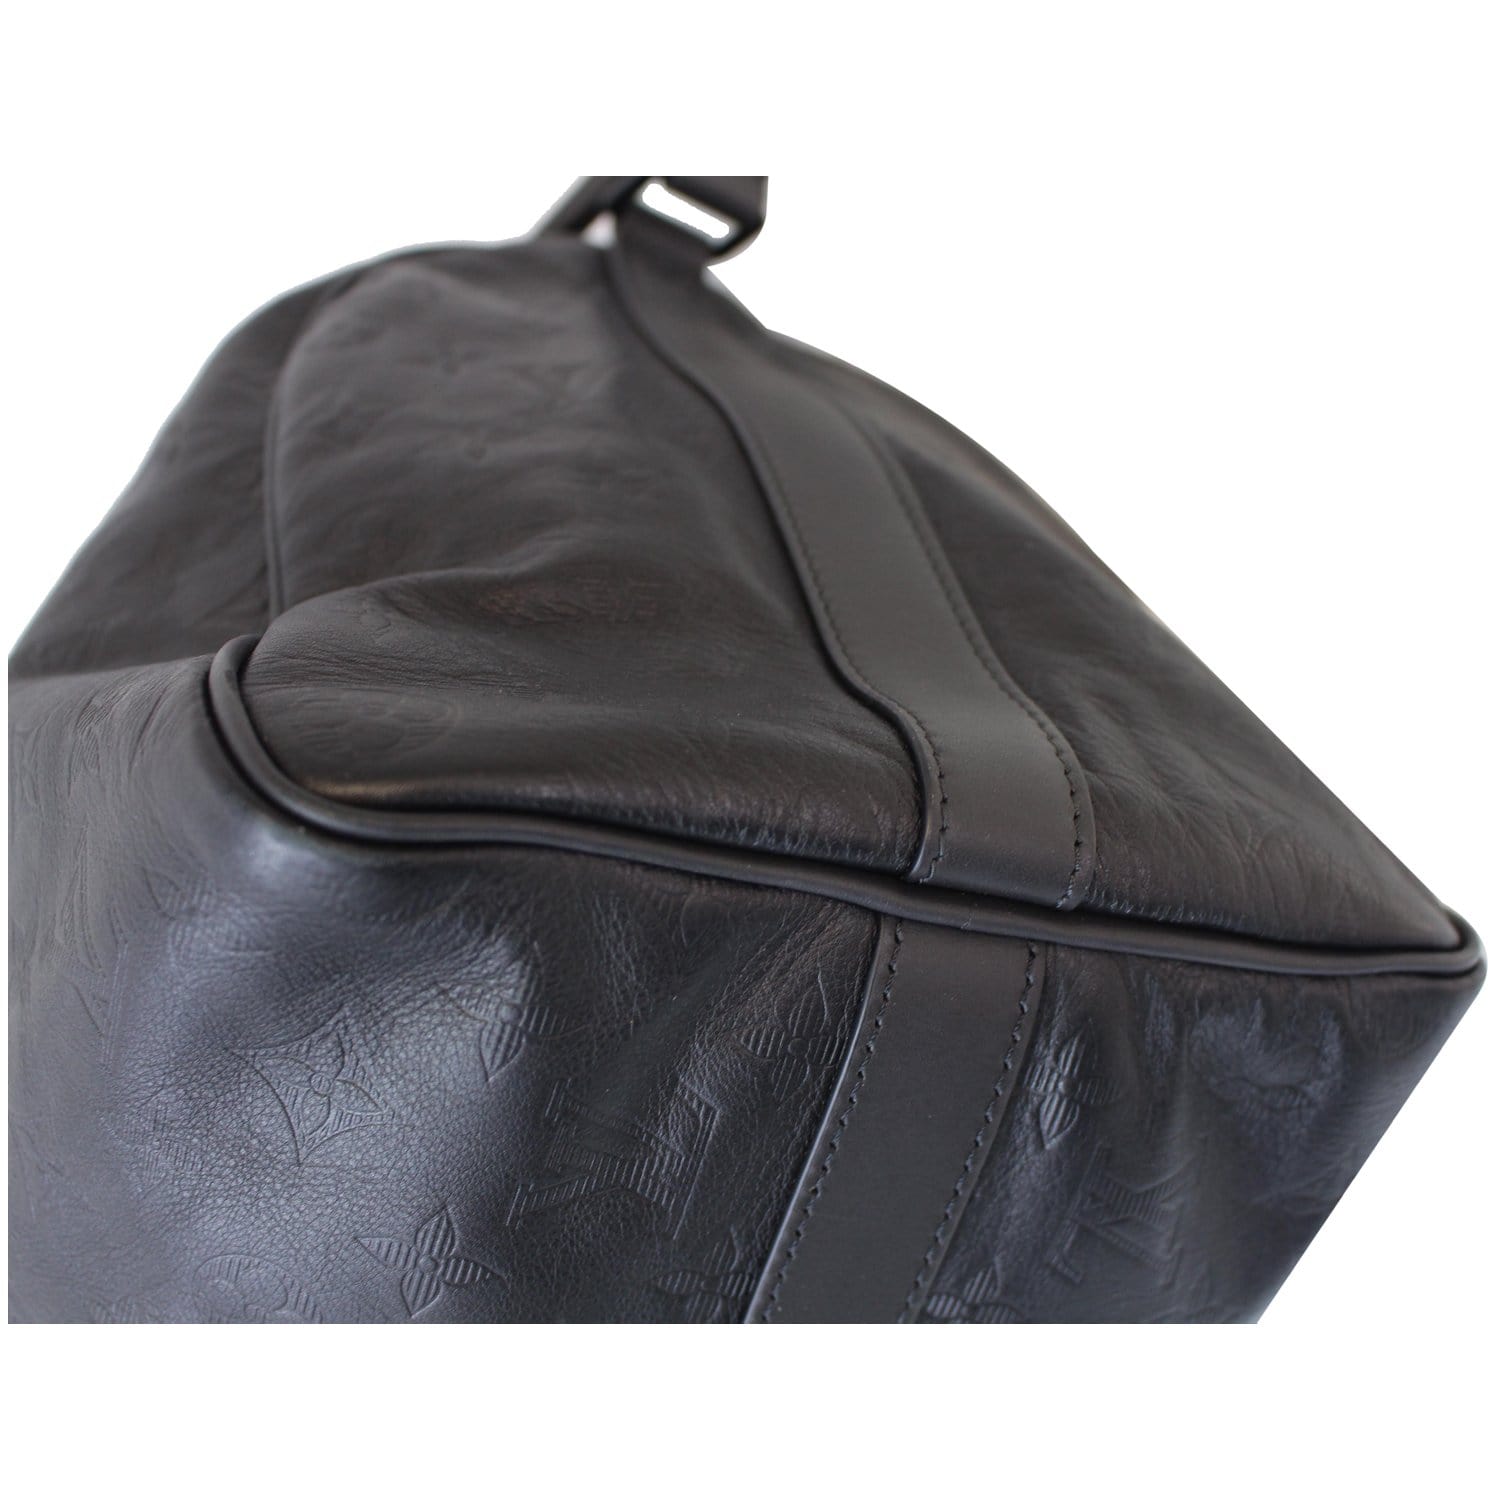 Louis Vuitton Speedy Bandouliere 40 - ShopStyle Shoulder Bags